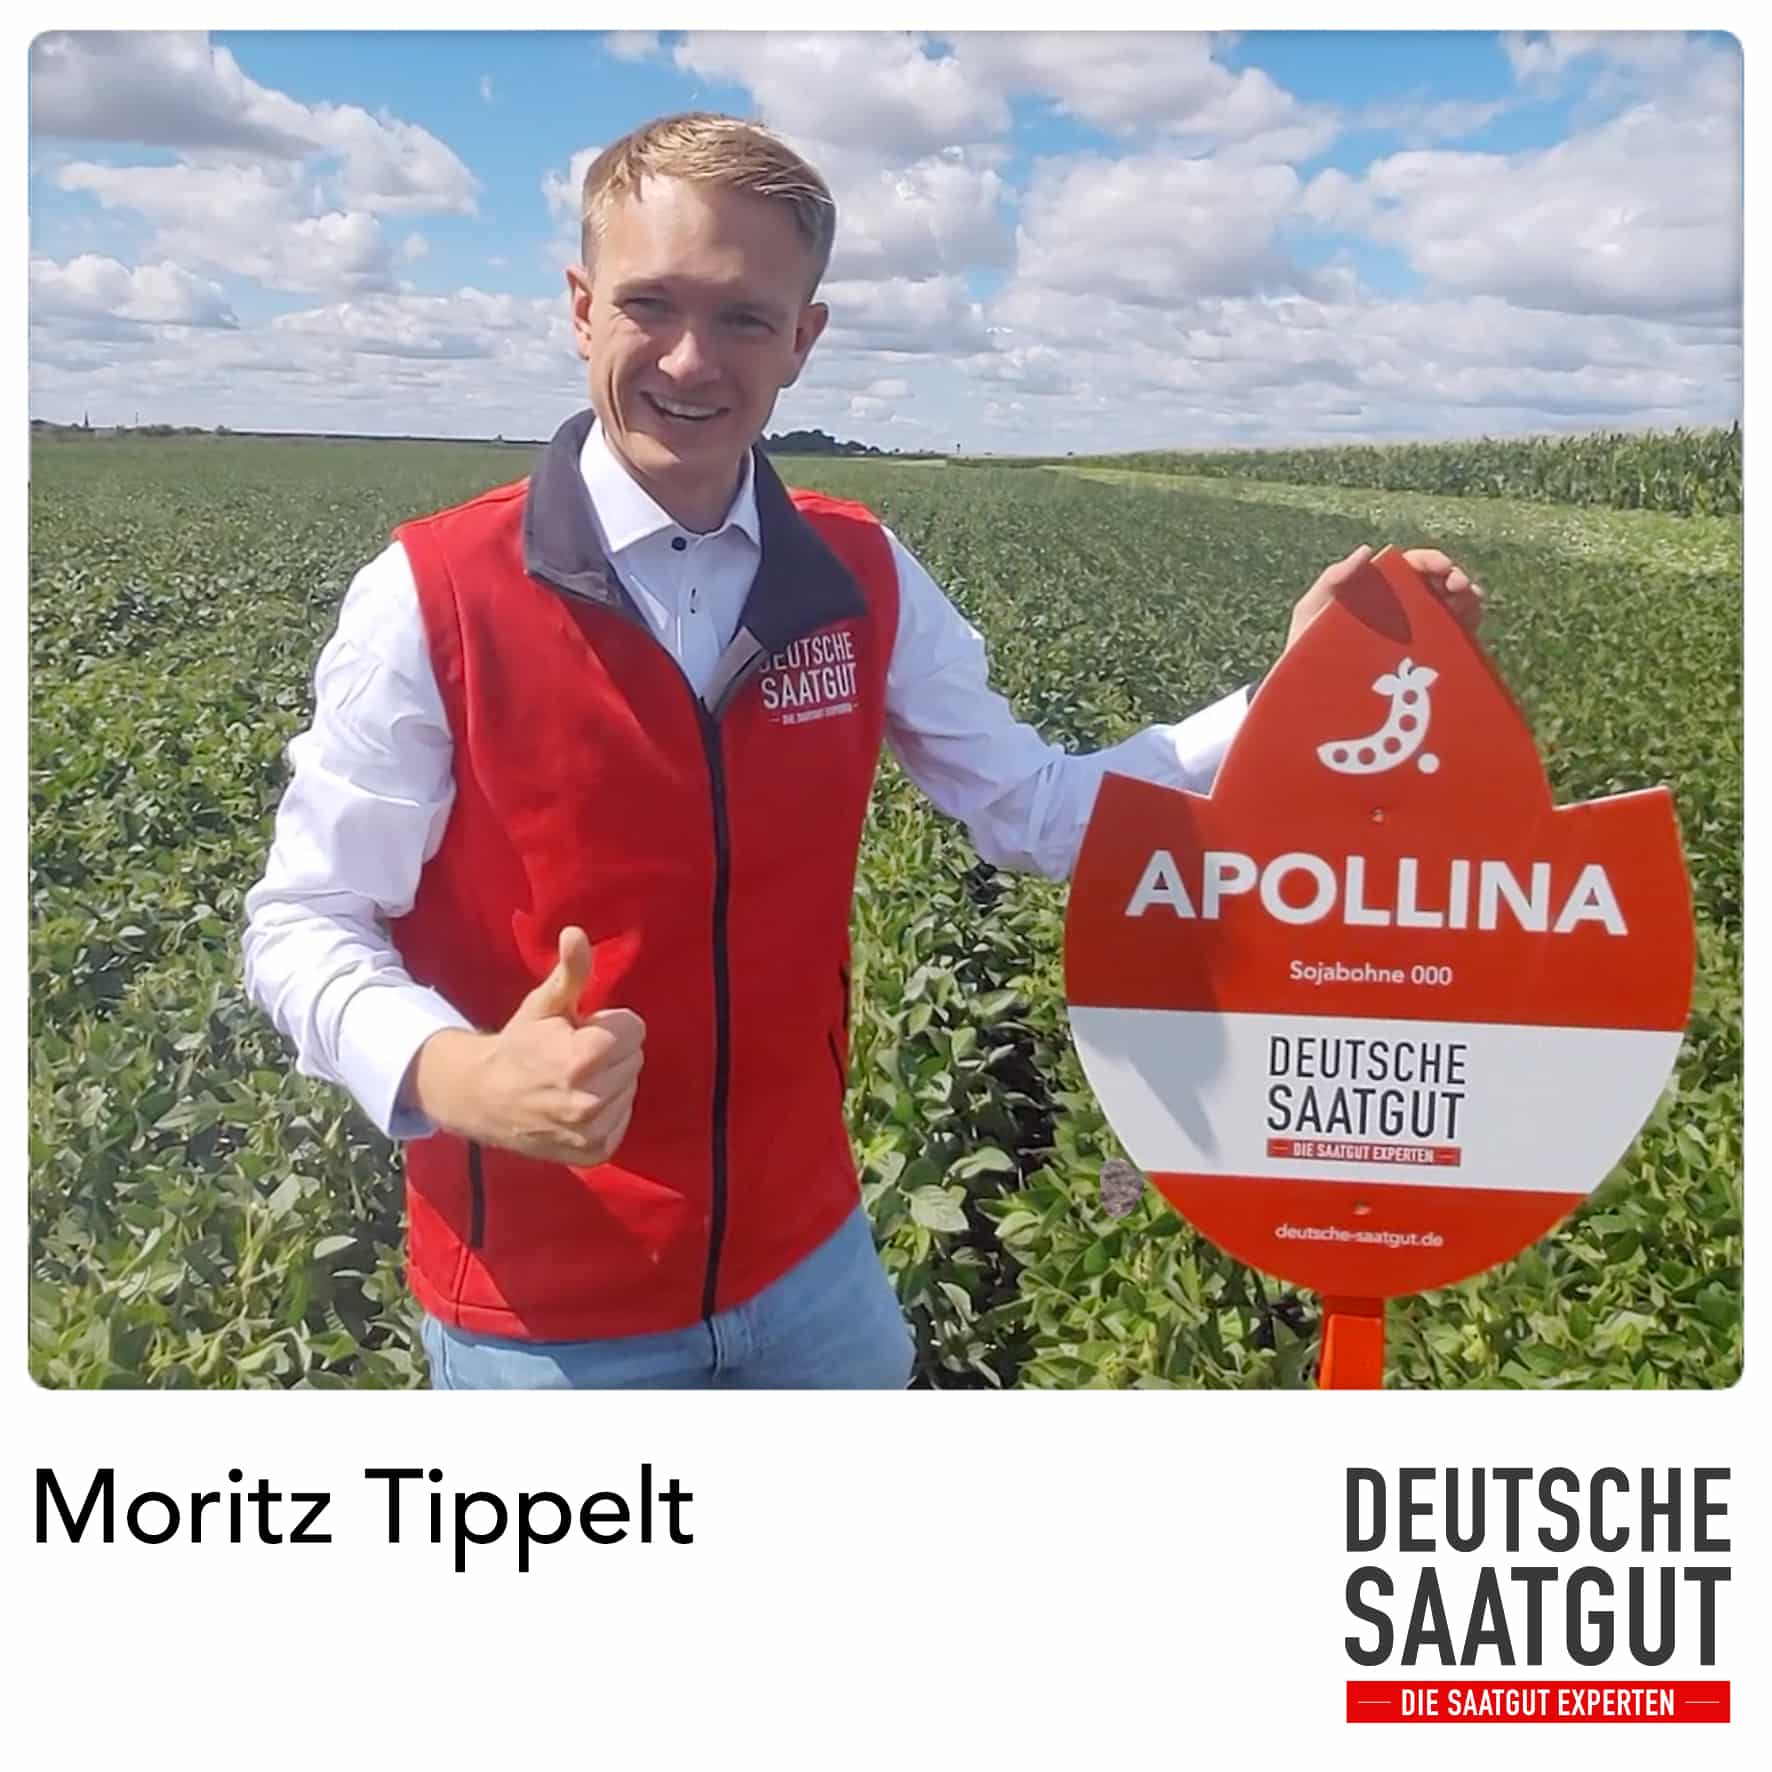 Moritz Tippelt – Praxisfläche Sojaanbau – APOLLINA, Landkreis Burgenlandkreis, Sachsen-Anhalt